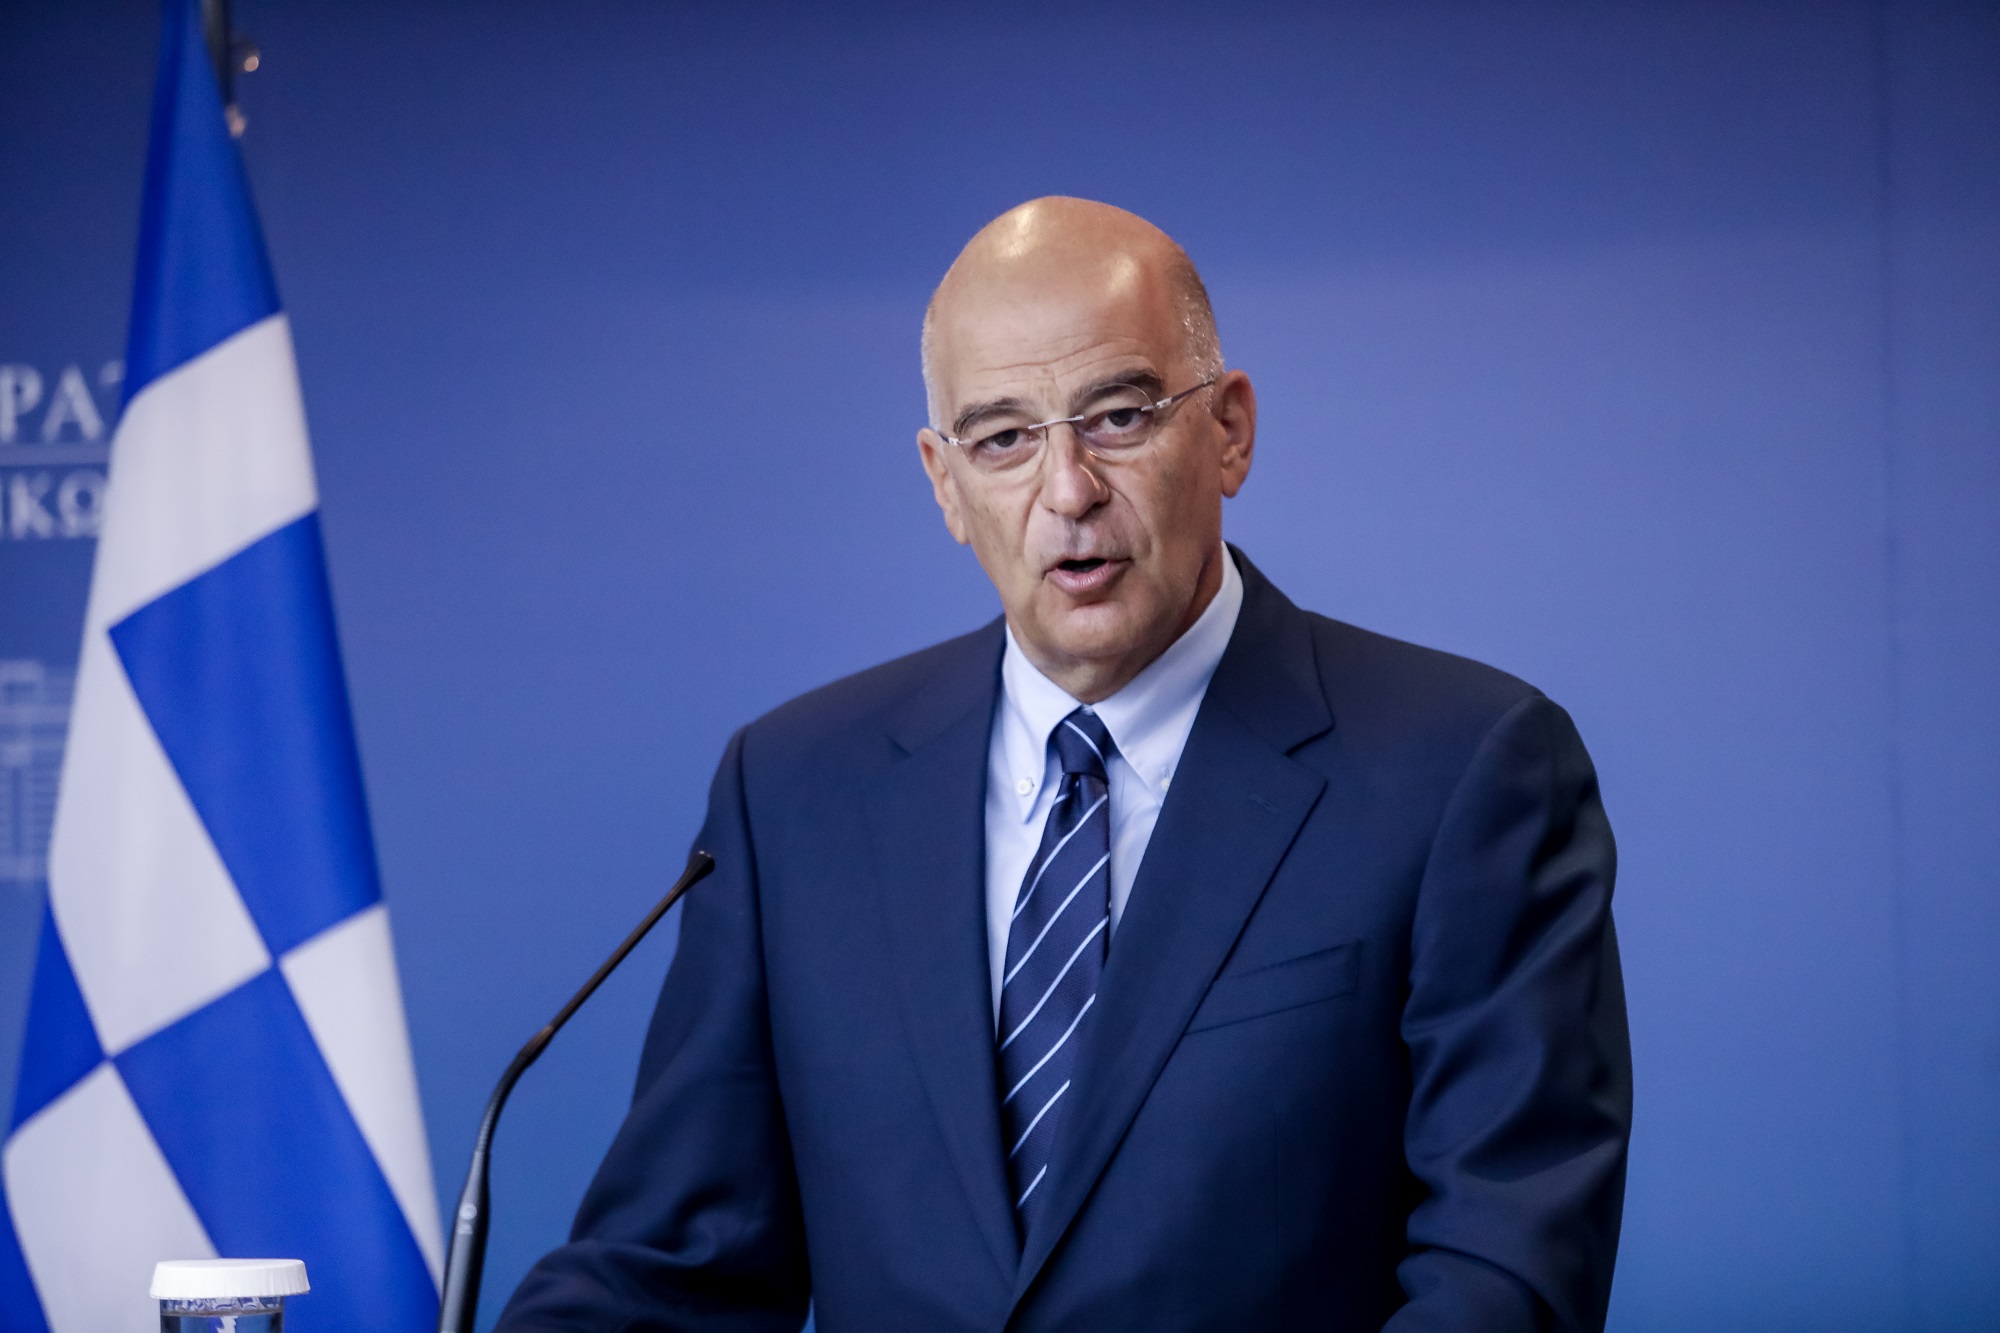 Ν.Δένδιας: «H Ελλάδα θα συνεχίσει να υπερασπίζεται τα δίκαια της χάρη στις ισχυρές και ακμαίες Ένοπλες Δυνάμεις της»